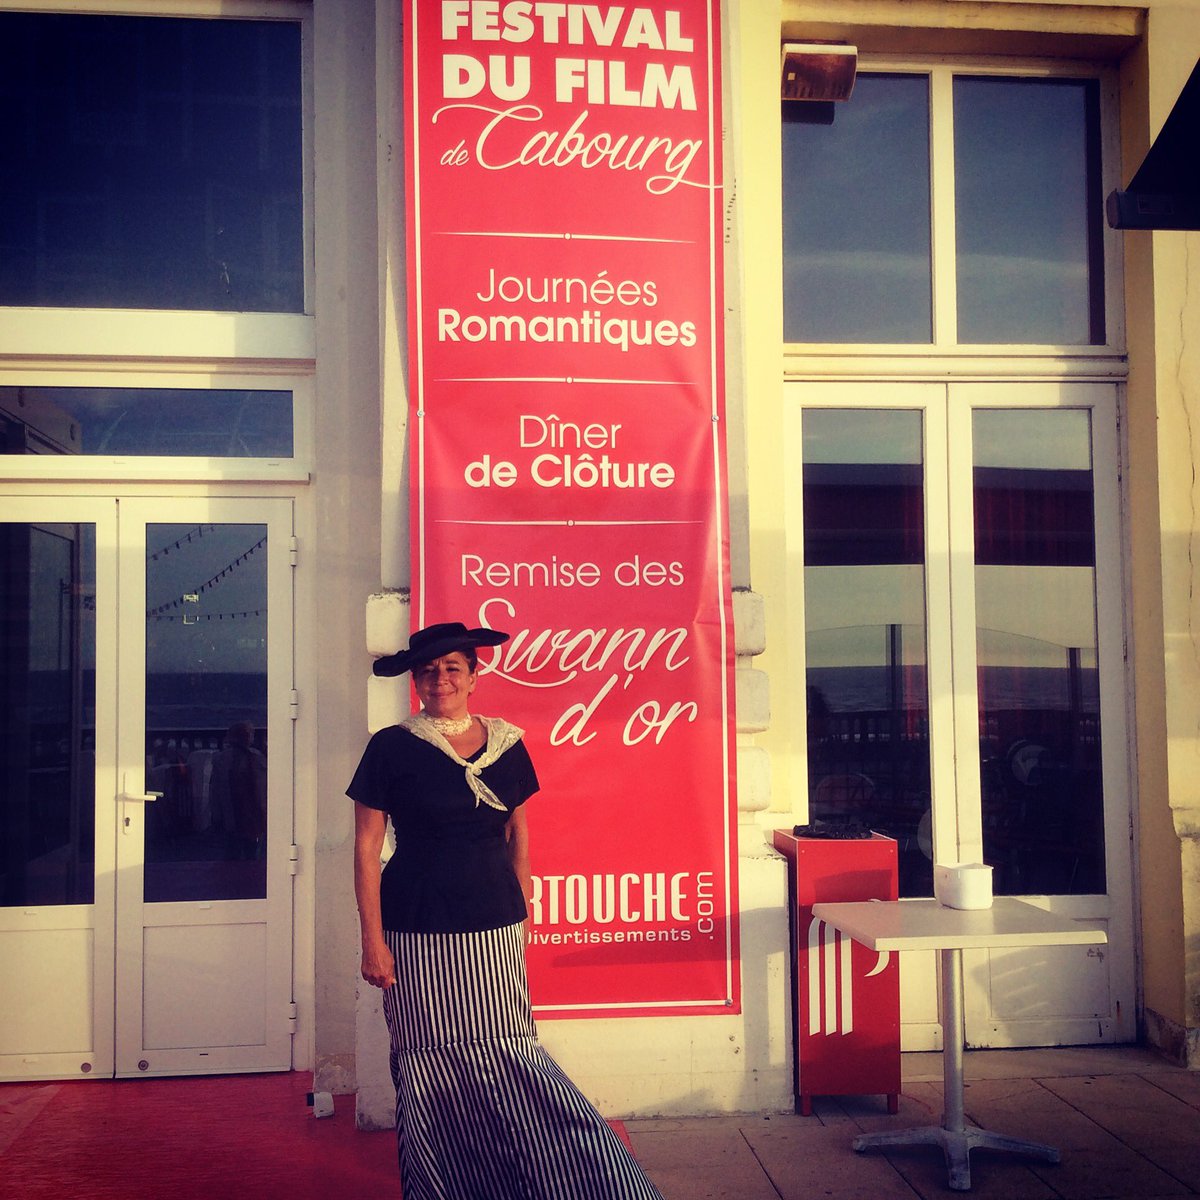 Festival  du film romantique #cabourg #Normandie #festivaldufilm #cinema #romantique #love #festival #cannes #deauville #tapisrouge #cannes